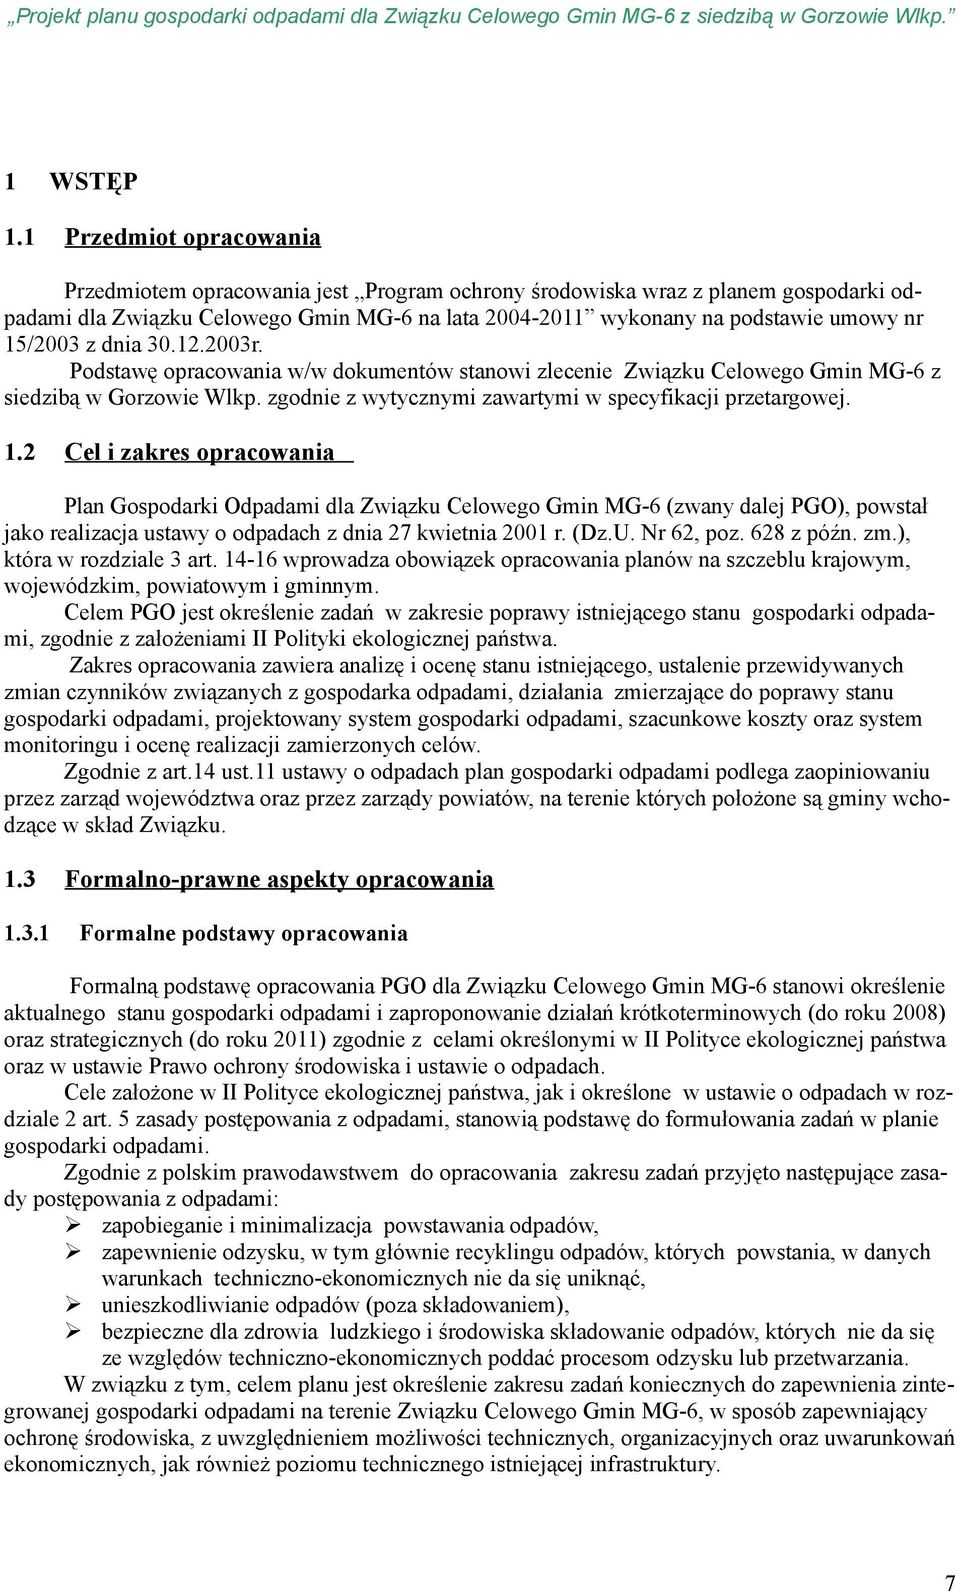 15/2003 z dnia 30.12.2003r. Podstawę opracowania w/w dokumentów stanowi zlecenie Związku Celowego Gmin MG-6 z siedzibą w Gorzowie Wlkp. zgodnie z wytycznymi zawartymi w specyfikacji przetargowej. 1.